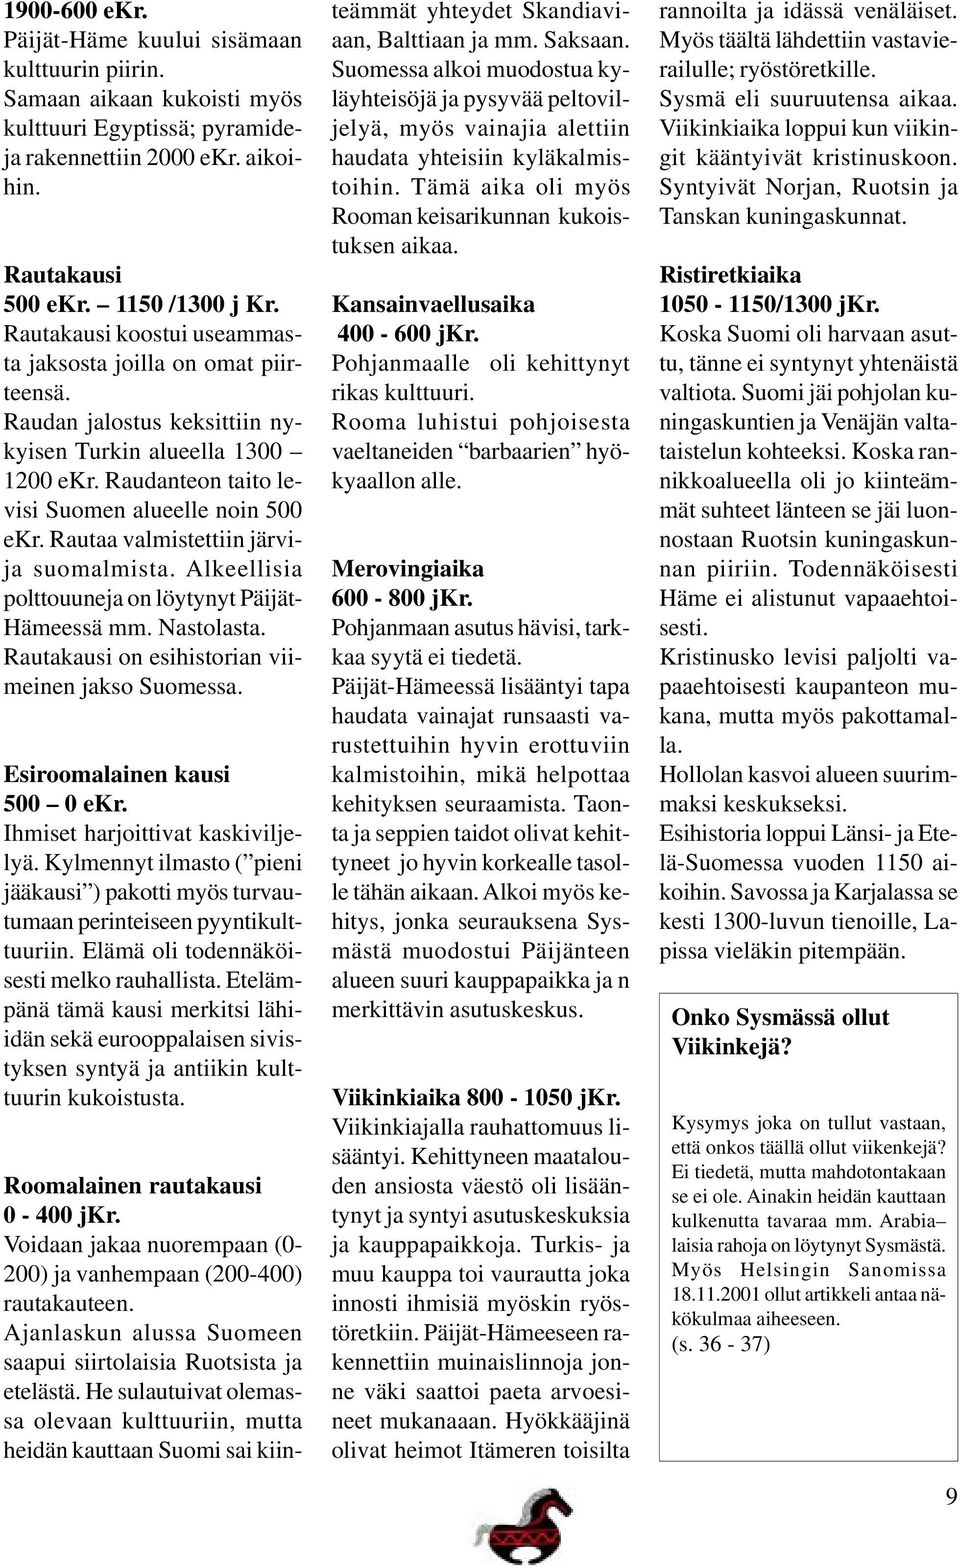 Rautaa valmistettiin järvija suomalmista. Alkeellisia polttouuneja on löytynyt Päijät- Hämeessä mm. Nastolasta. Rautakausi on esihistorian viimeinen jakso Suomessa. Esiroomalainen kausi 500 0 ekr.